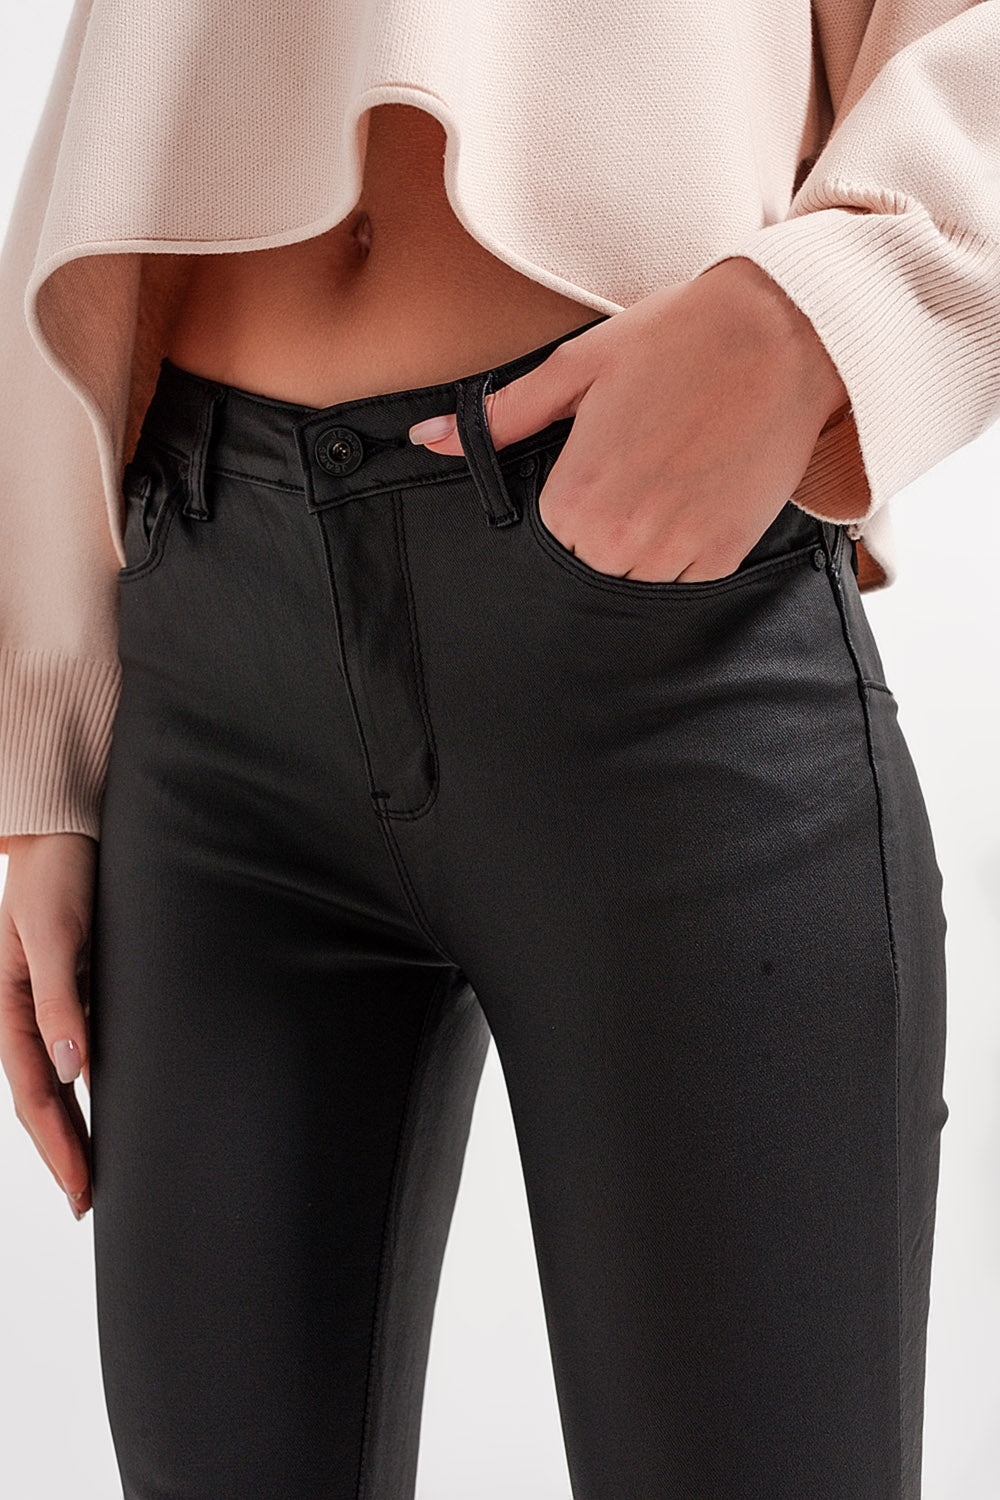 Pantaloni in pelle sintetica con fondo con spacco a cerniera neri